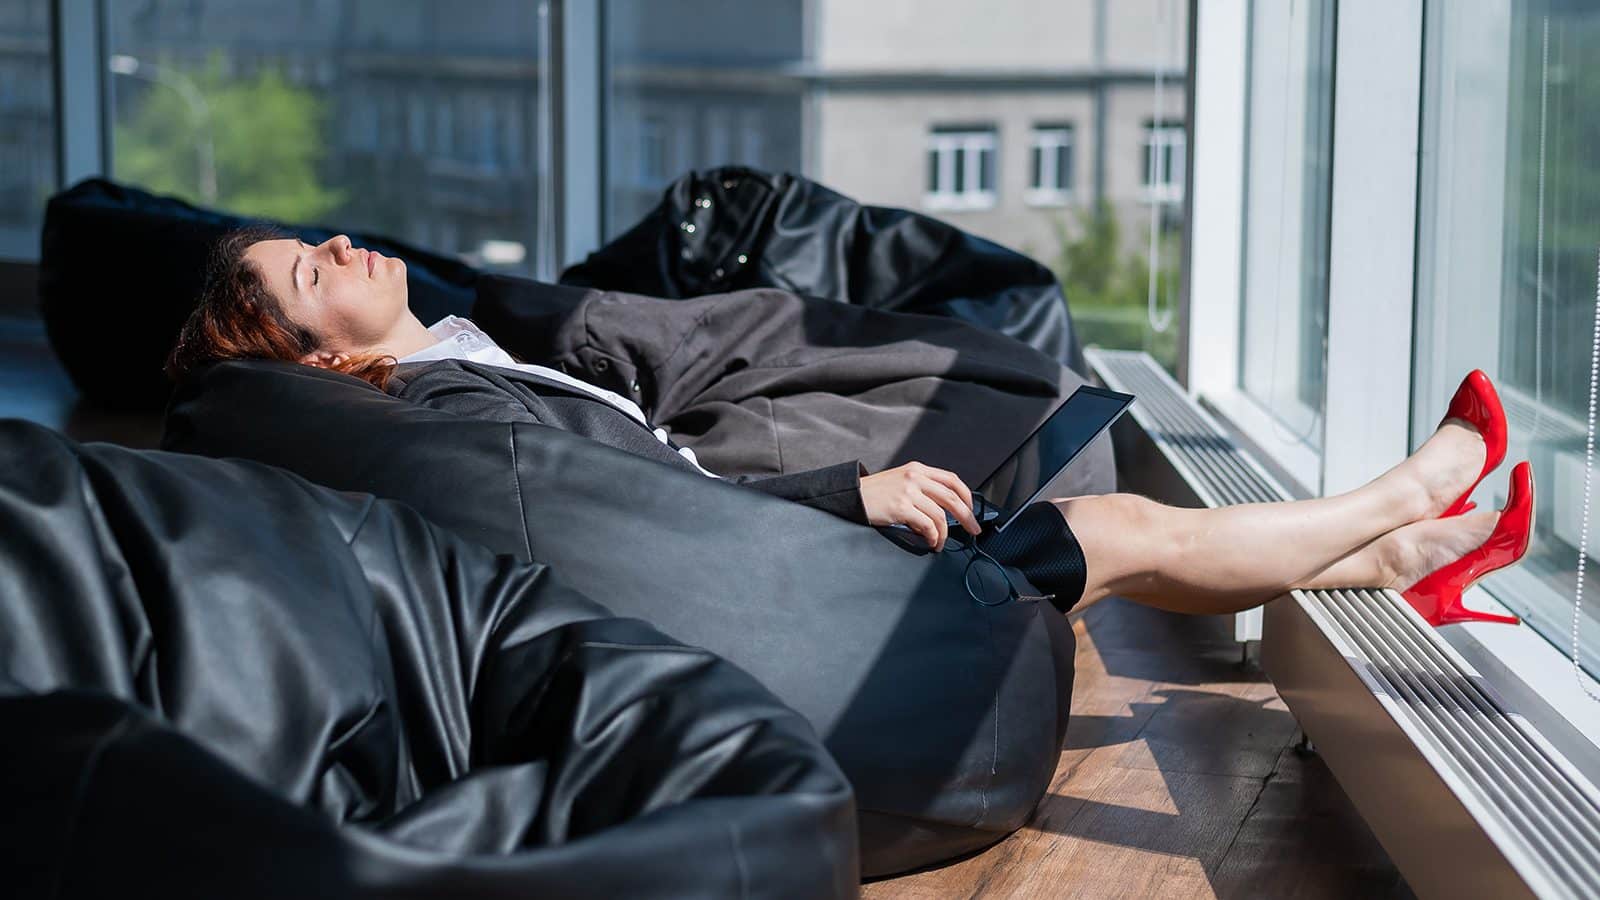 Innovative Sleep Company Creates an Employee Right to Nap Policy